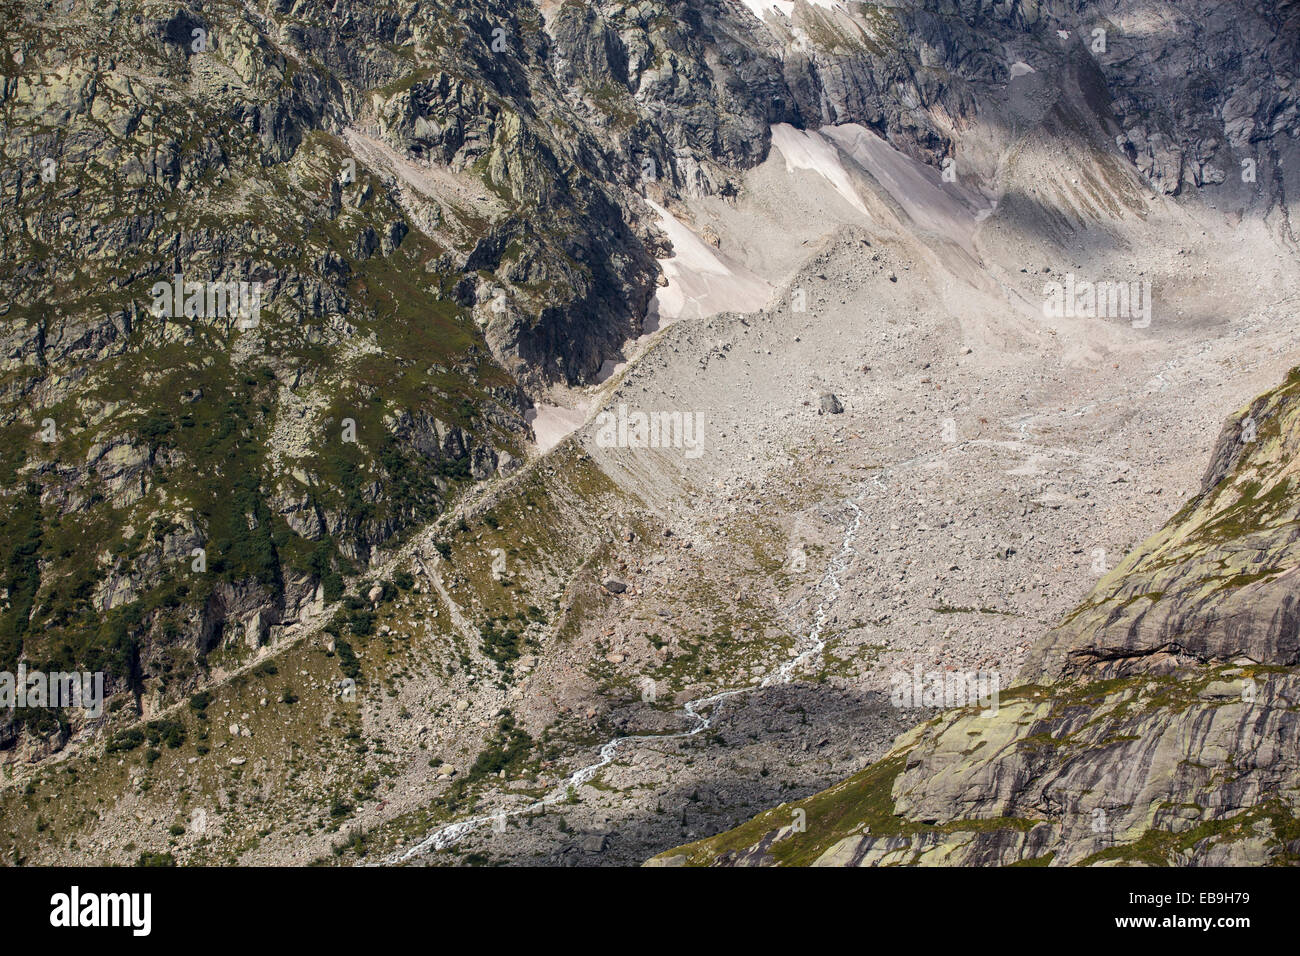 The rapidly receding Glacier de pre de Bar in the Mont Blanc range, Italy. Stock Photo